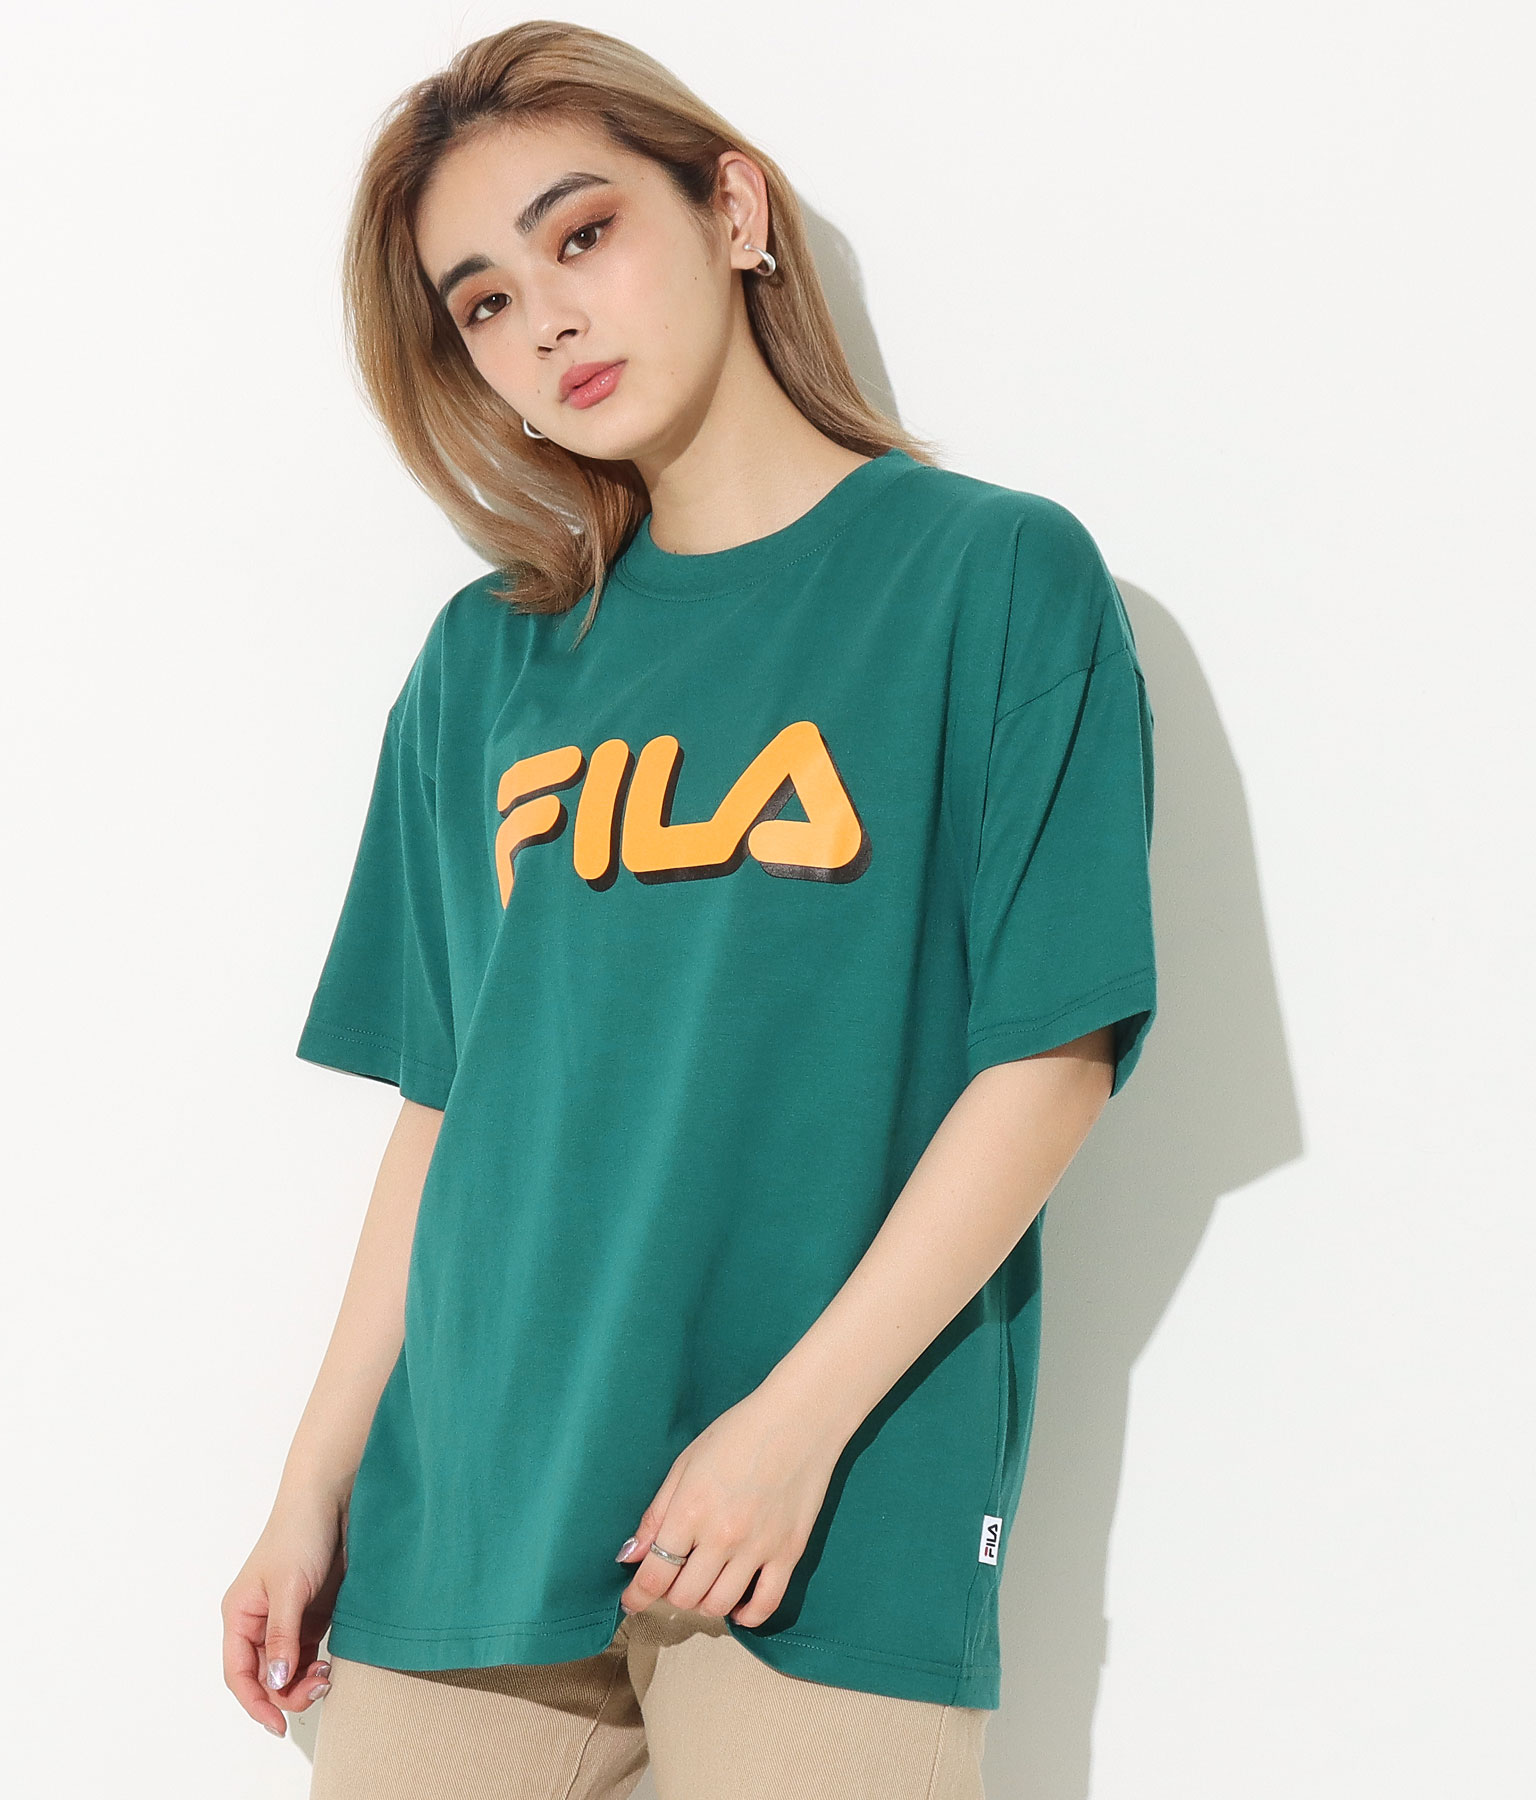 FILA Tシャツ(トップス/Tシャツ) | FILA | レディースファッション通販ANAPオンライン